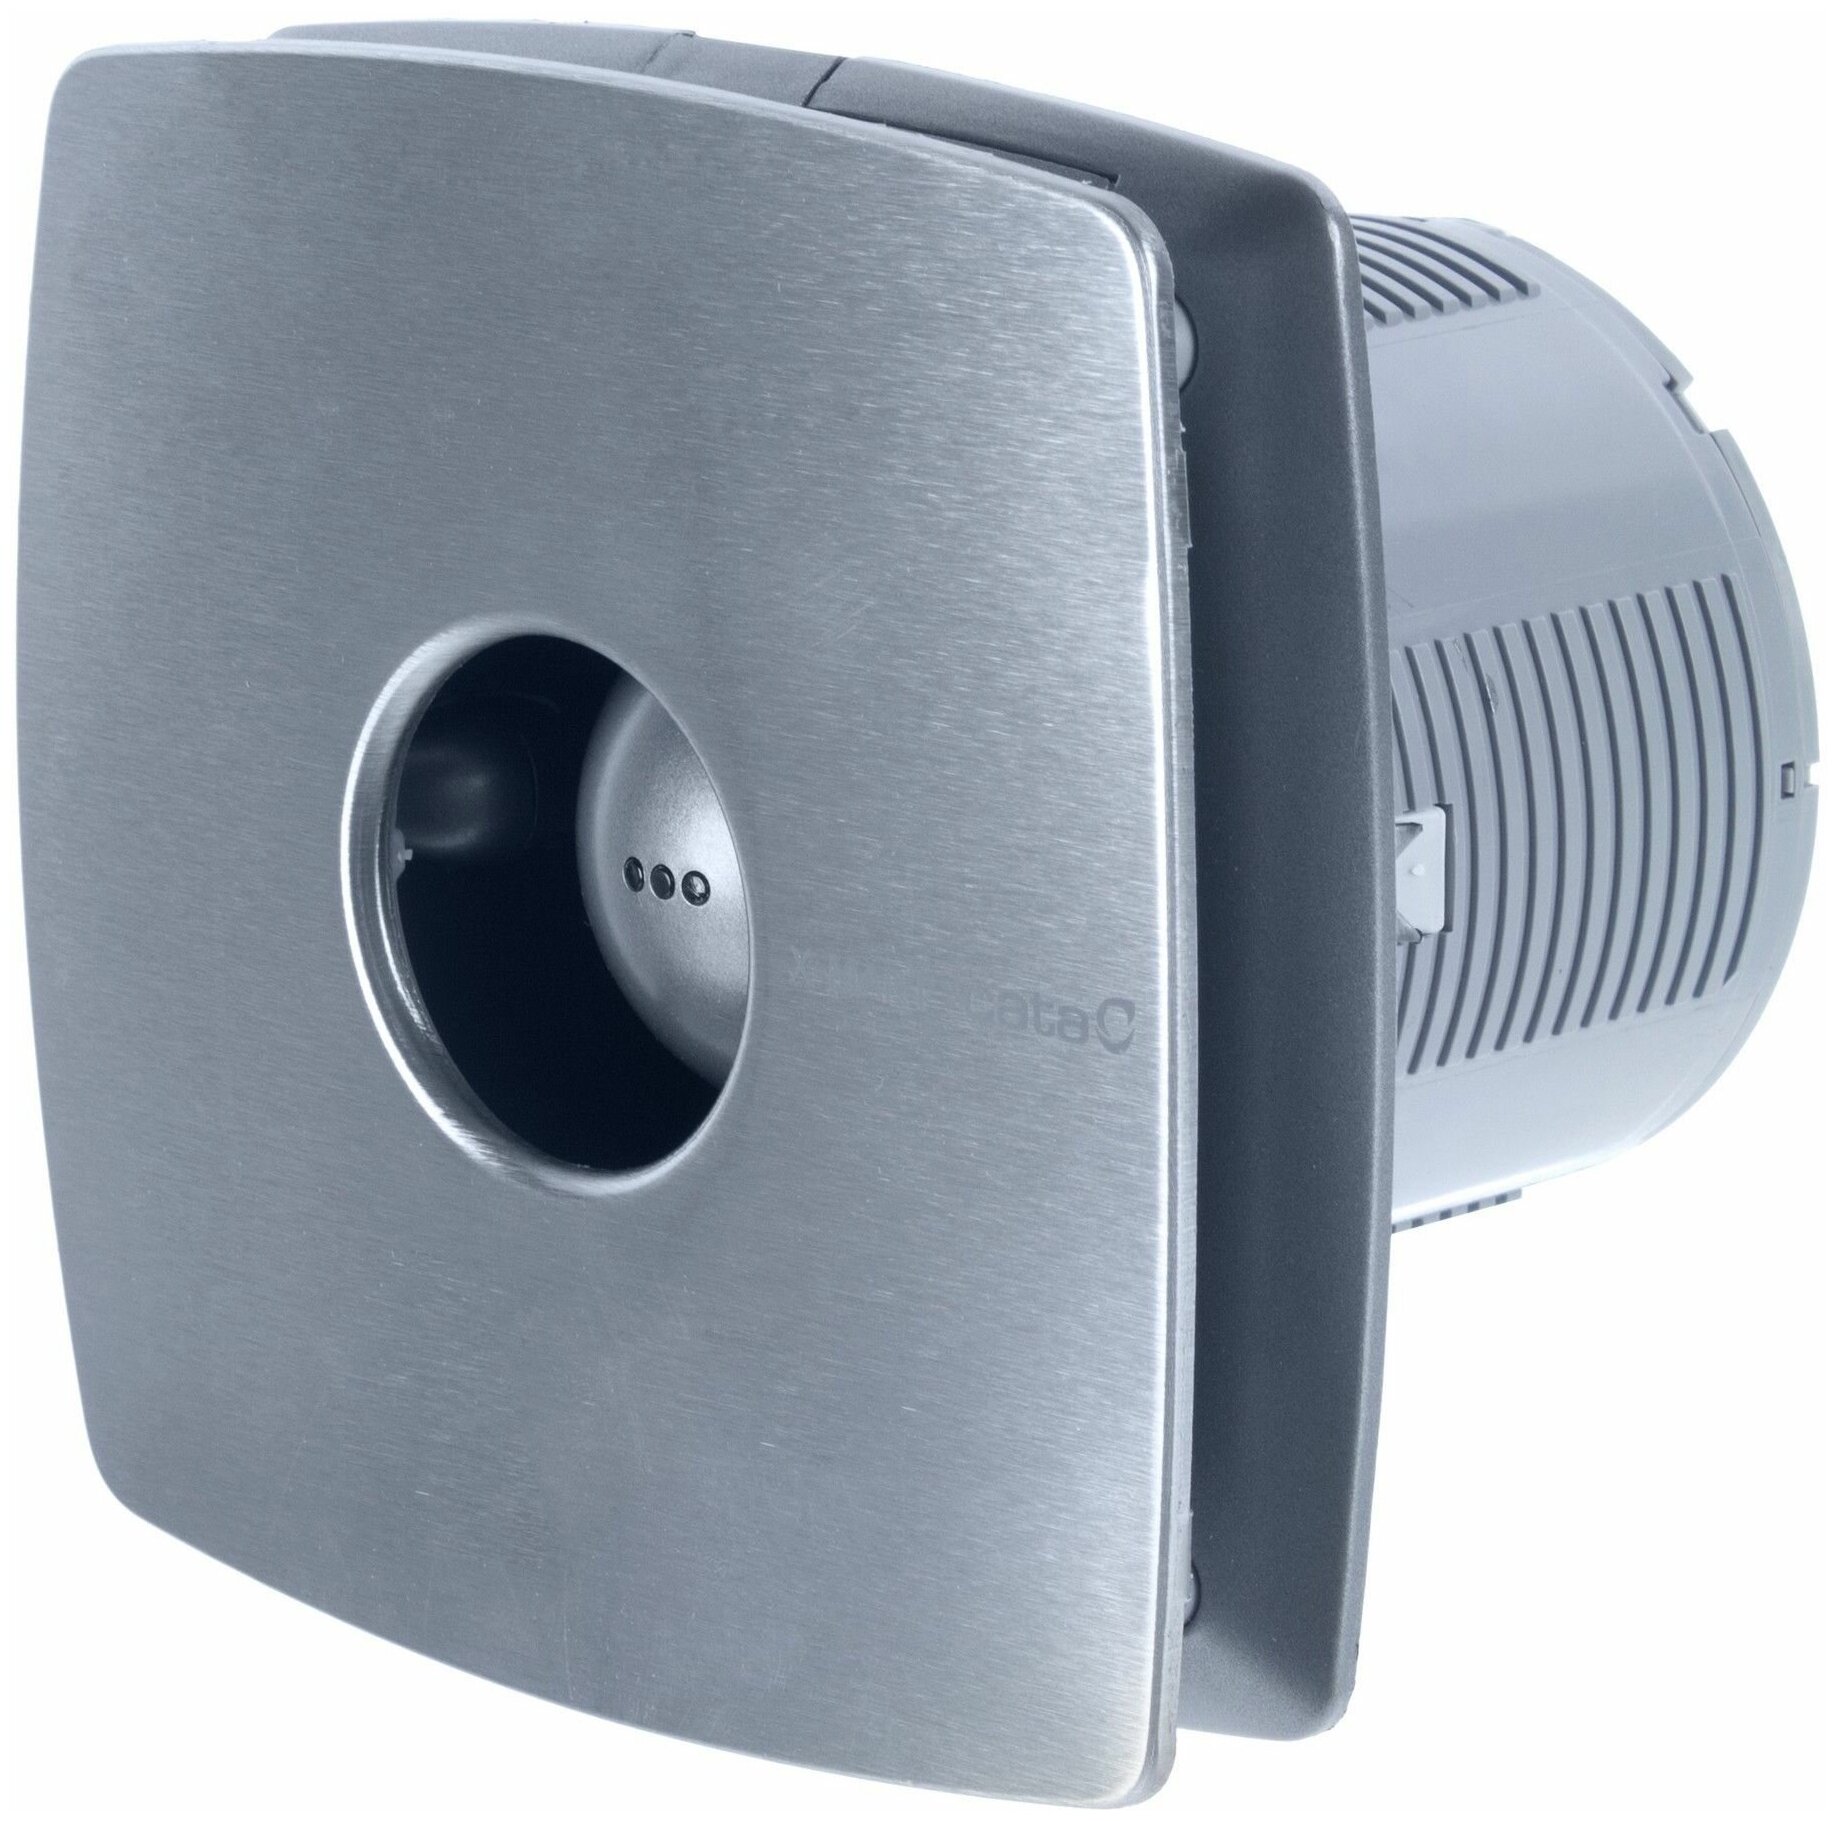 Вентилятор осевой вытяжной Cata X-Mart 10 Inox D100 мм 38 дБ 98 куб. м/ч обратный клапан цвет серебристый